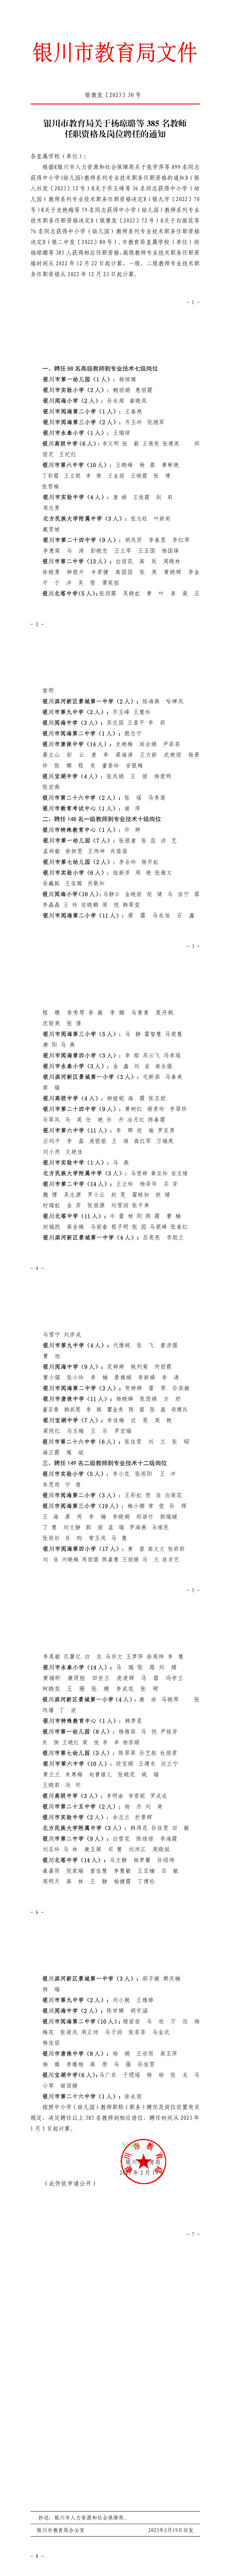 2022年银川市教育局关于杨琼璐等385名教师任职资格及岗位聘任的通知_00.jpg